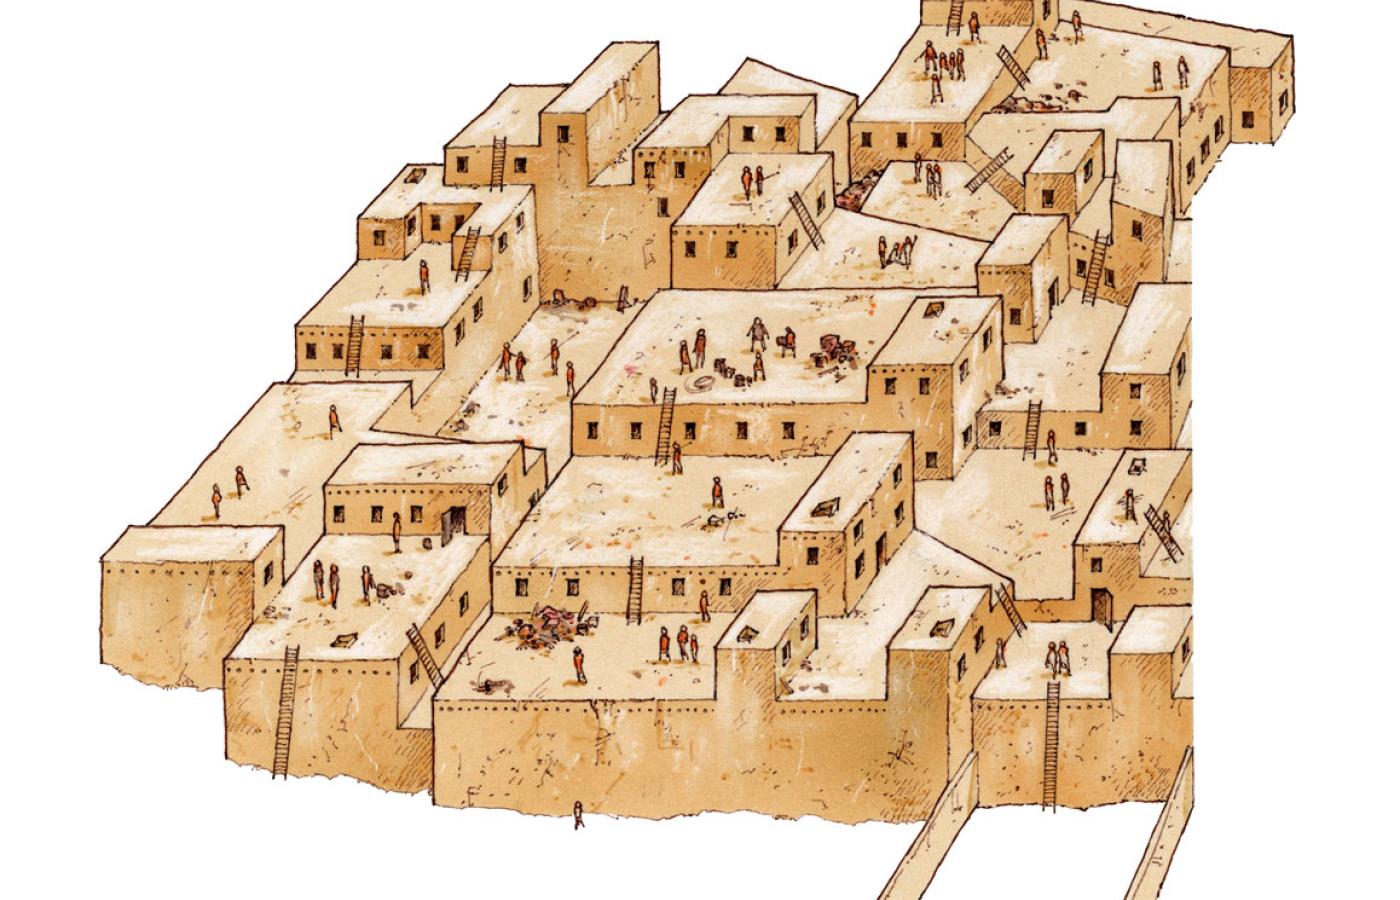 Çatalhöyük przypominało indiańskie pueblo, nie miało murów obronnych ani ulic.